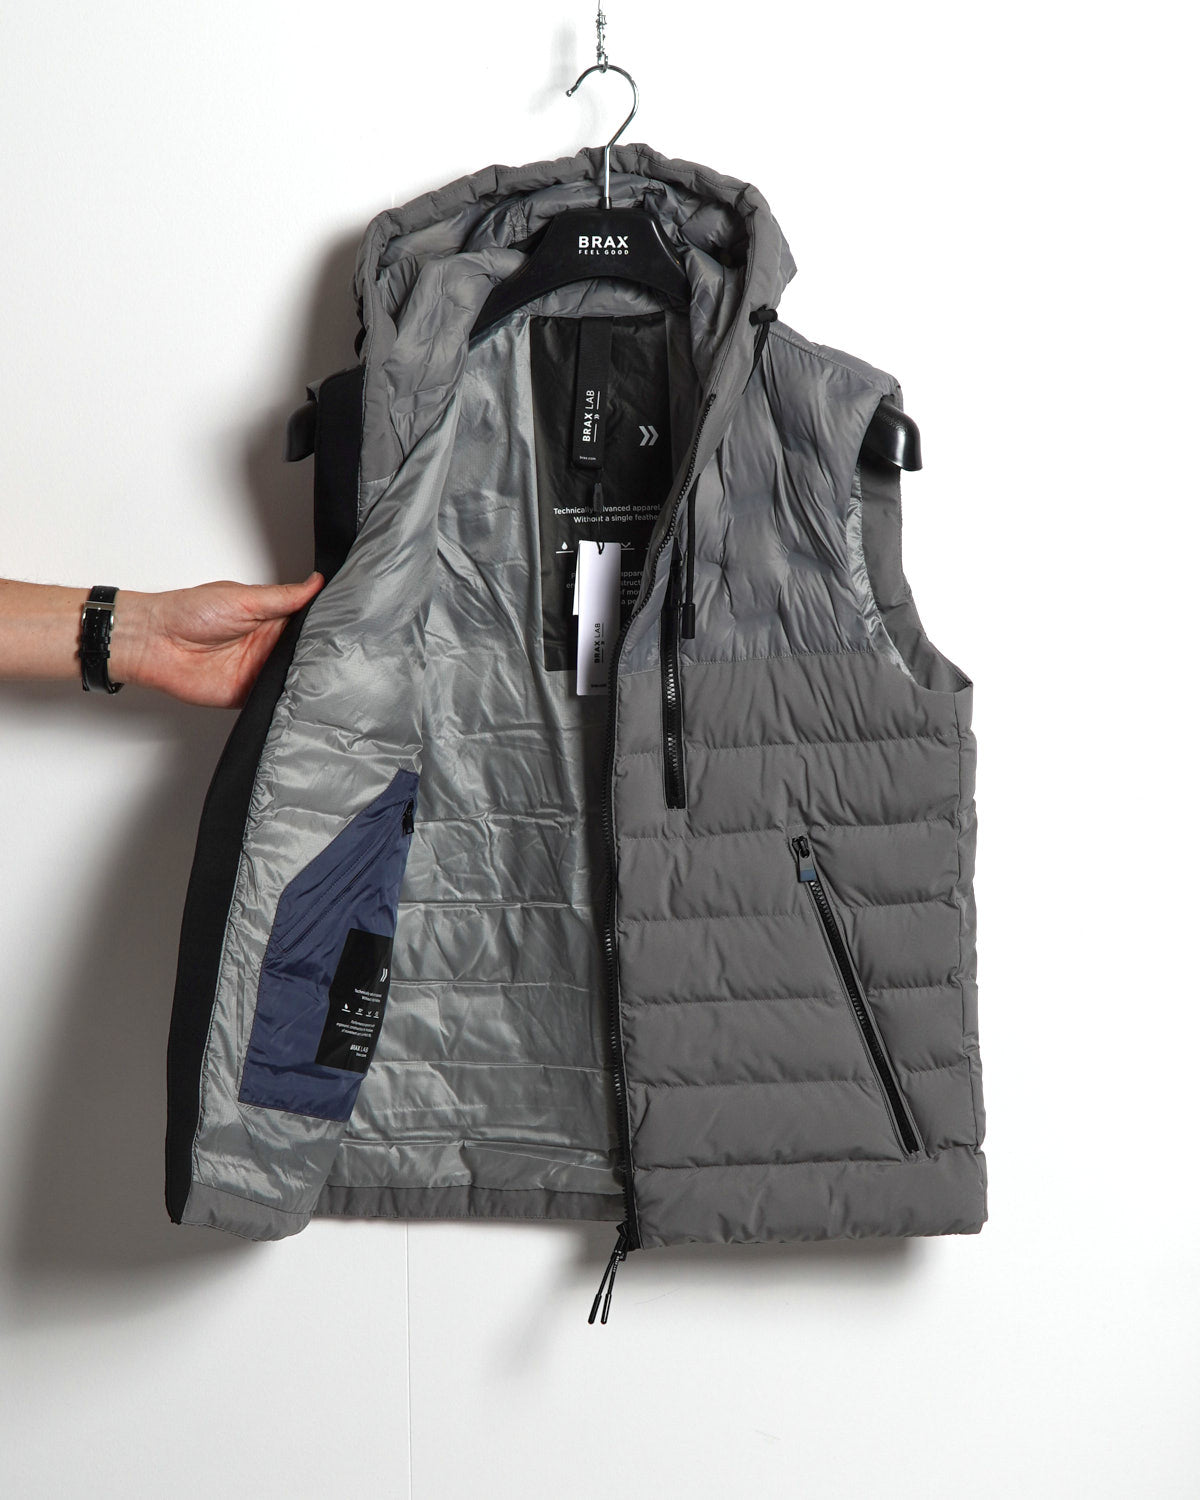 Men's Threshold Fleece Half Zip Vest